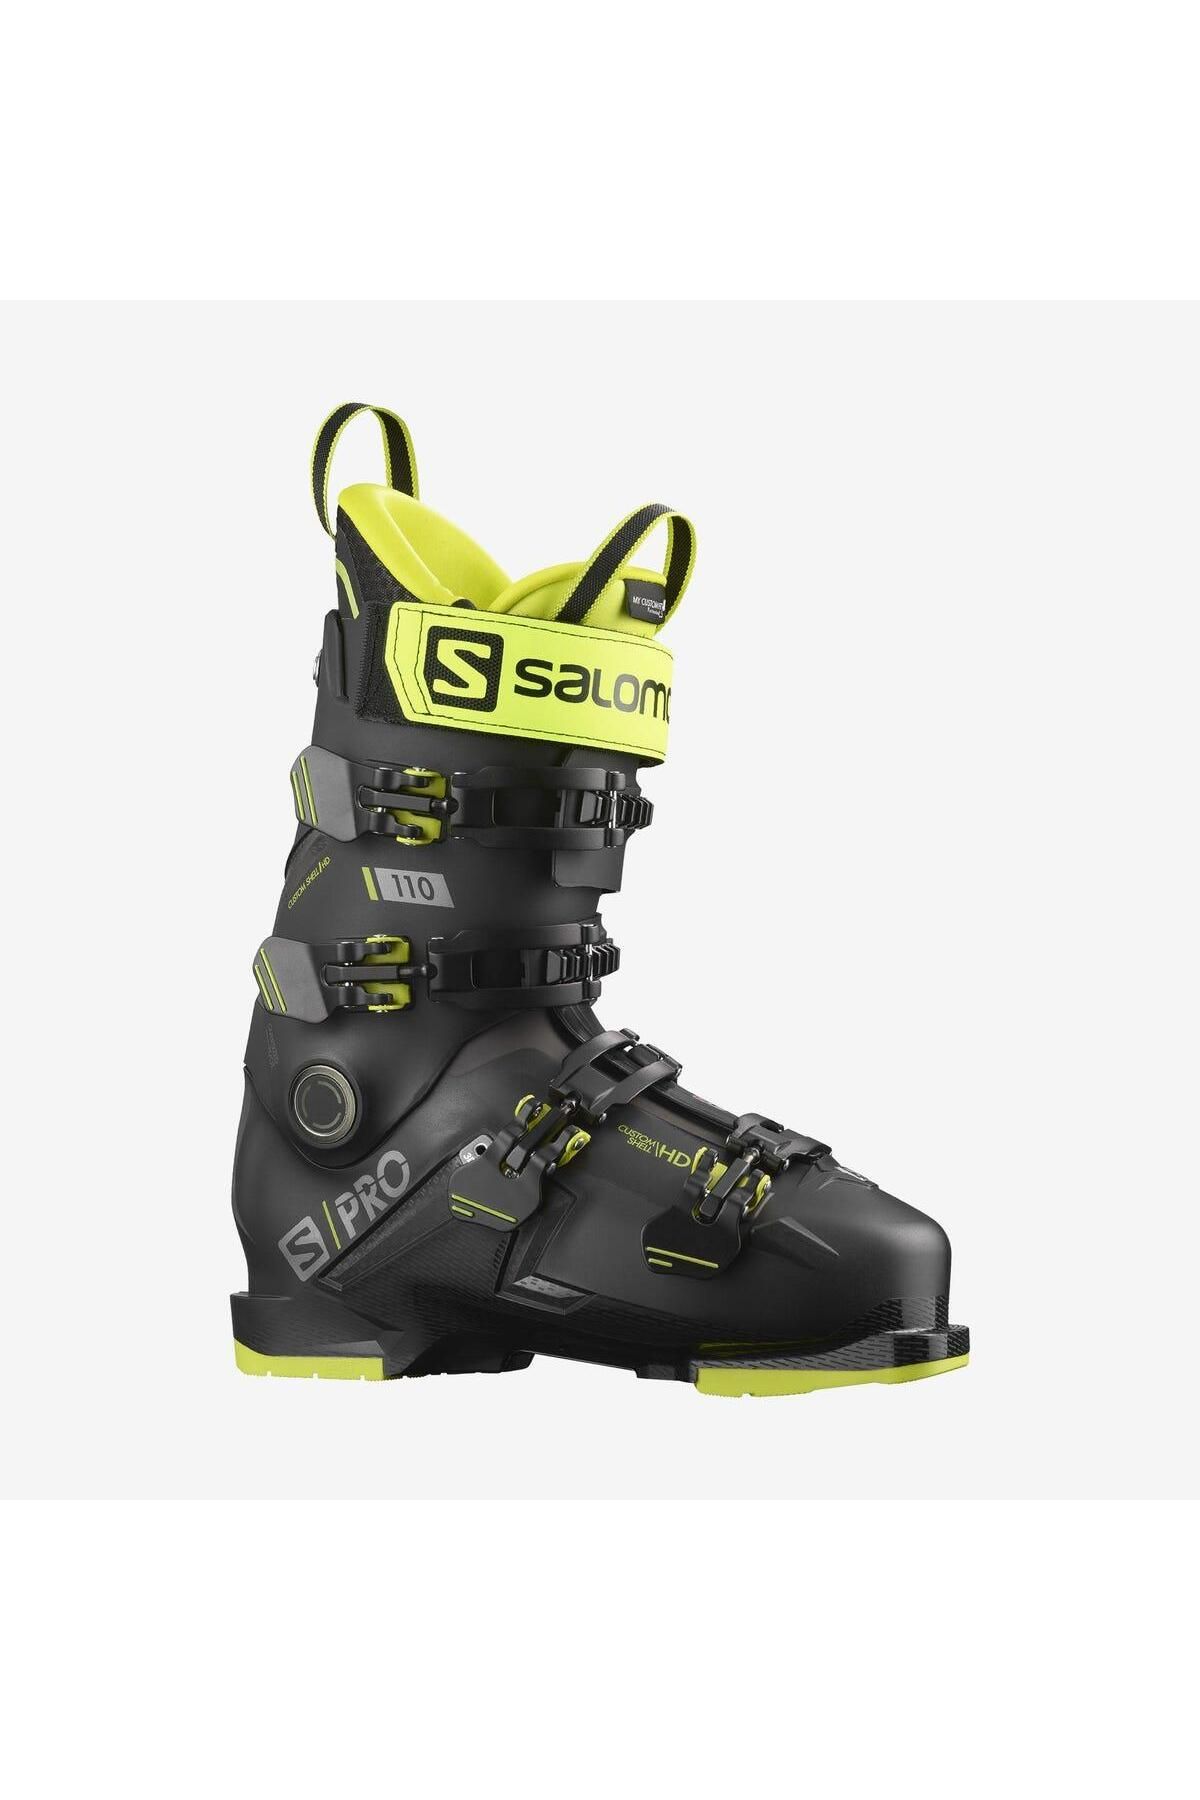 Salomon S/pro 110 Gw Erkek Kayak Ayakkabısı-l41481500blk